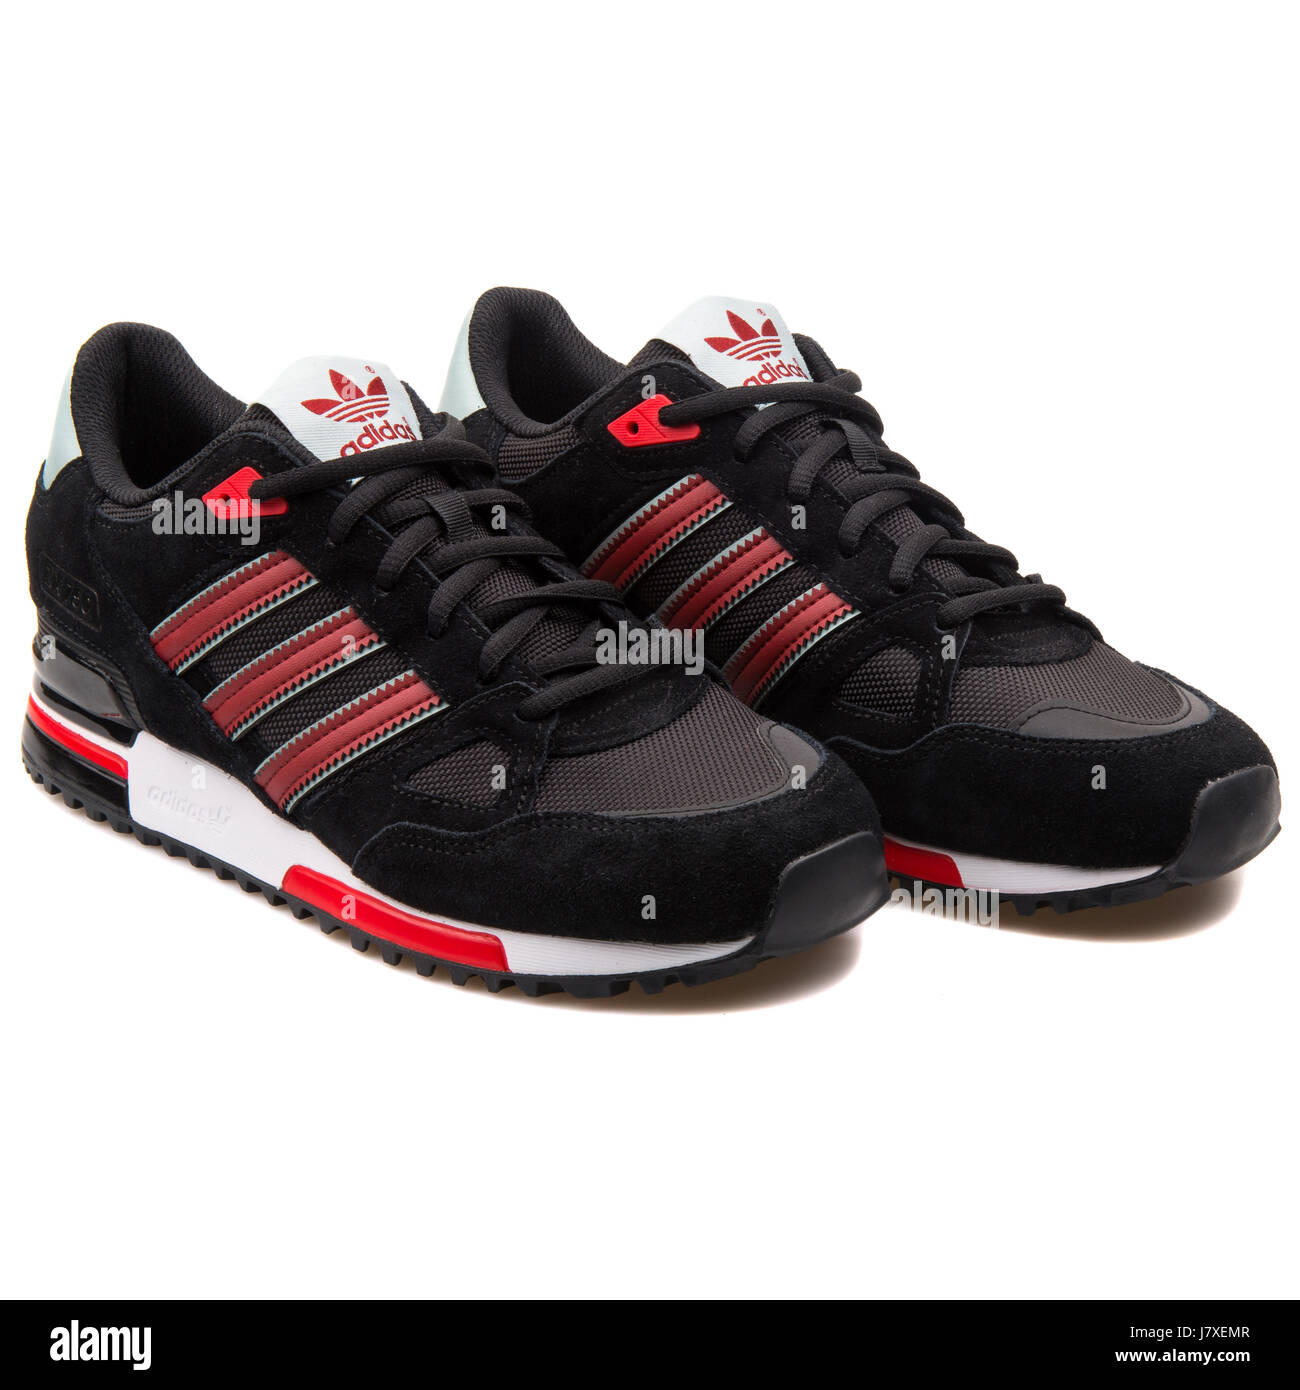 Adidas ZX 750 Herren schwarz mit roten Sneakers - B24856 Stockfotografie -  Alamy